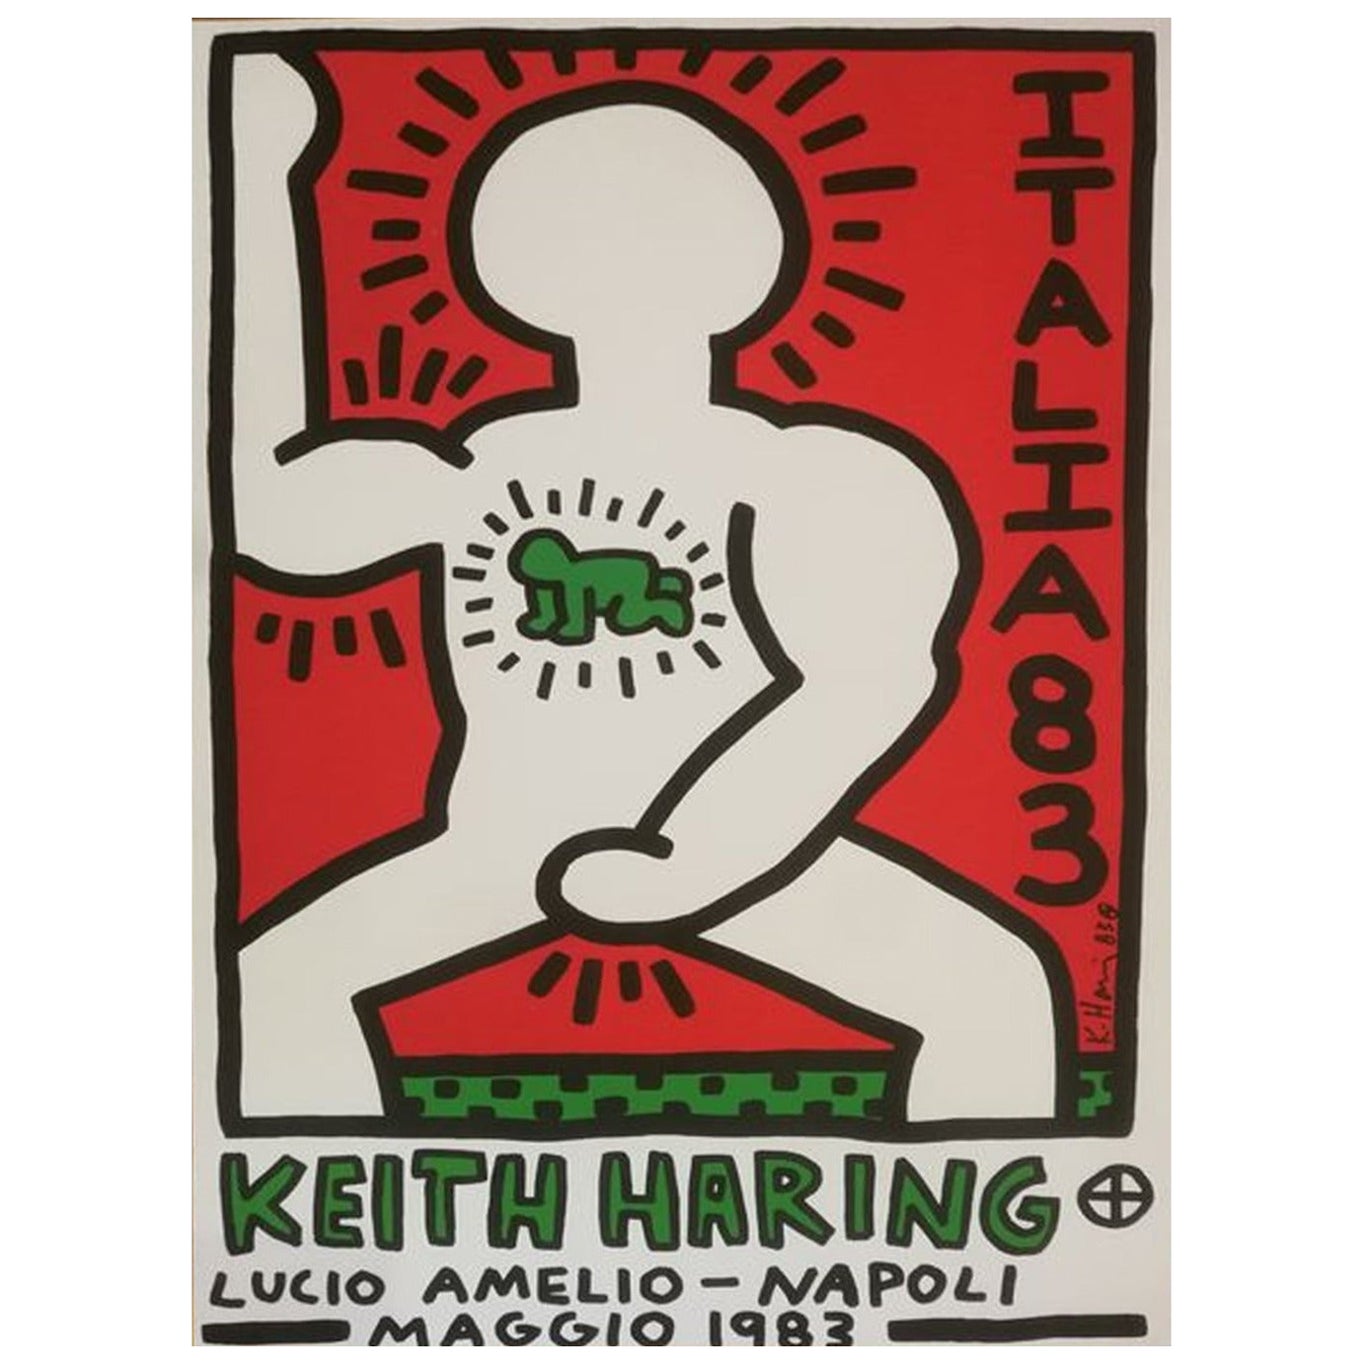 1983 Keith Haring, Lucio Amelio Napoli, Original-Vintage-Poster